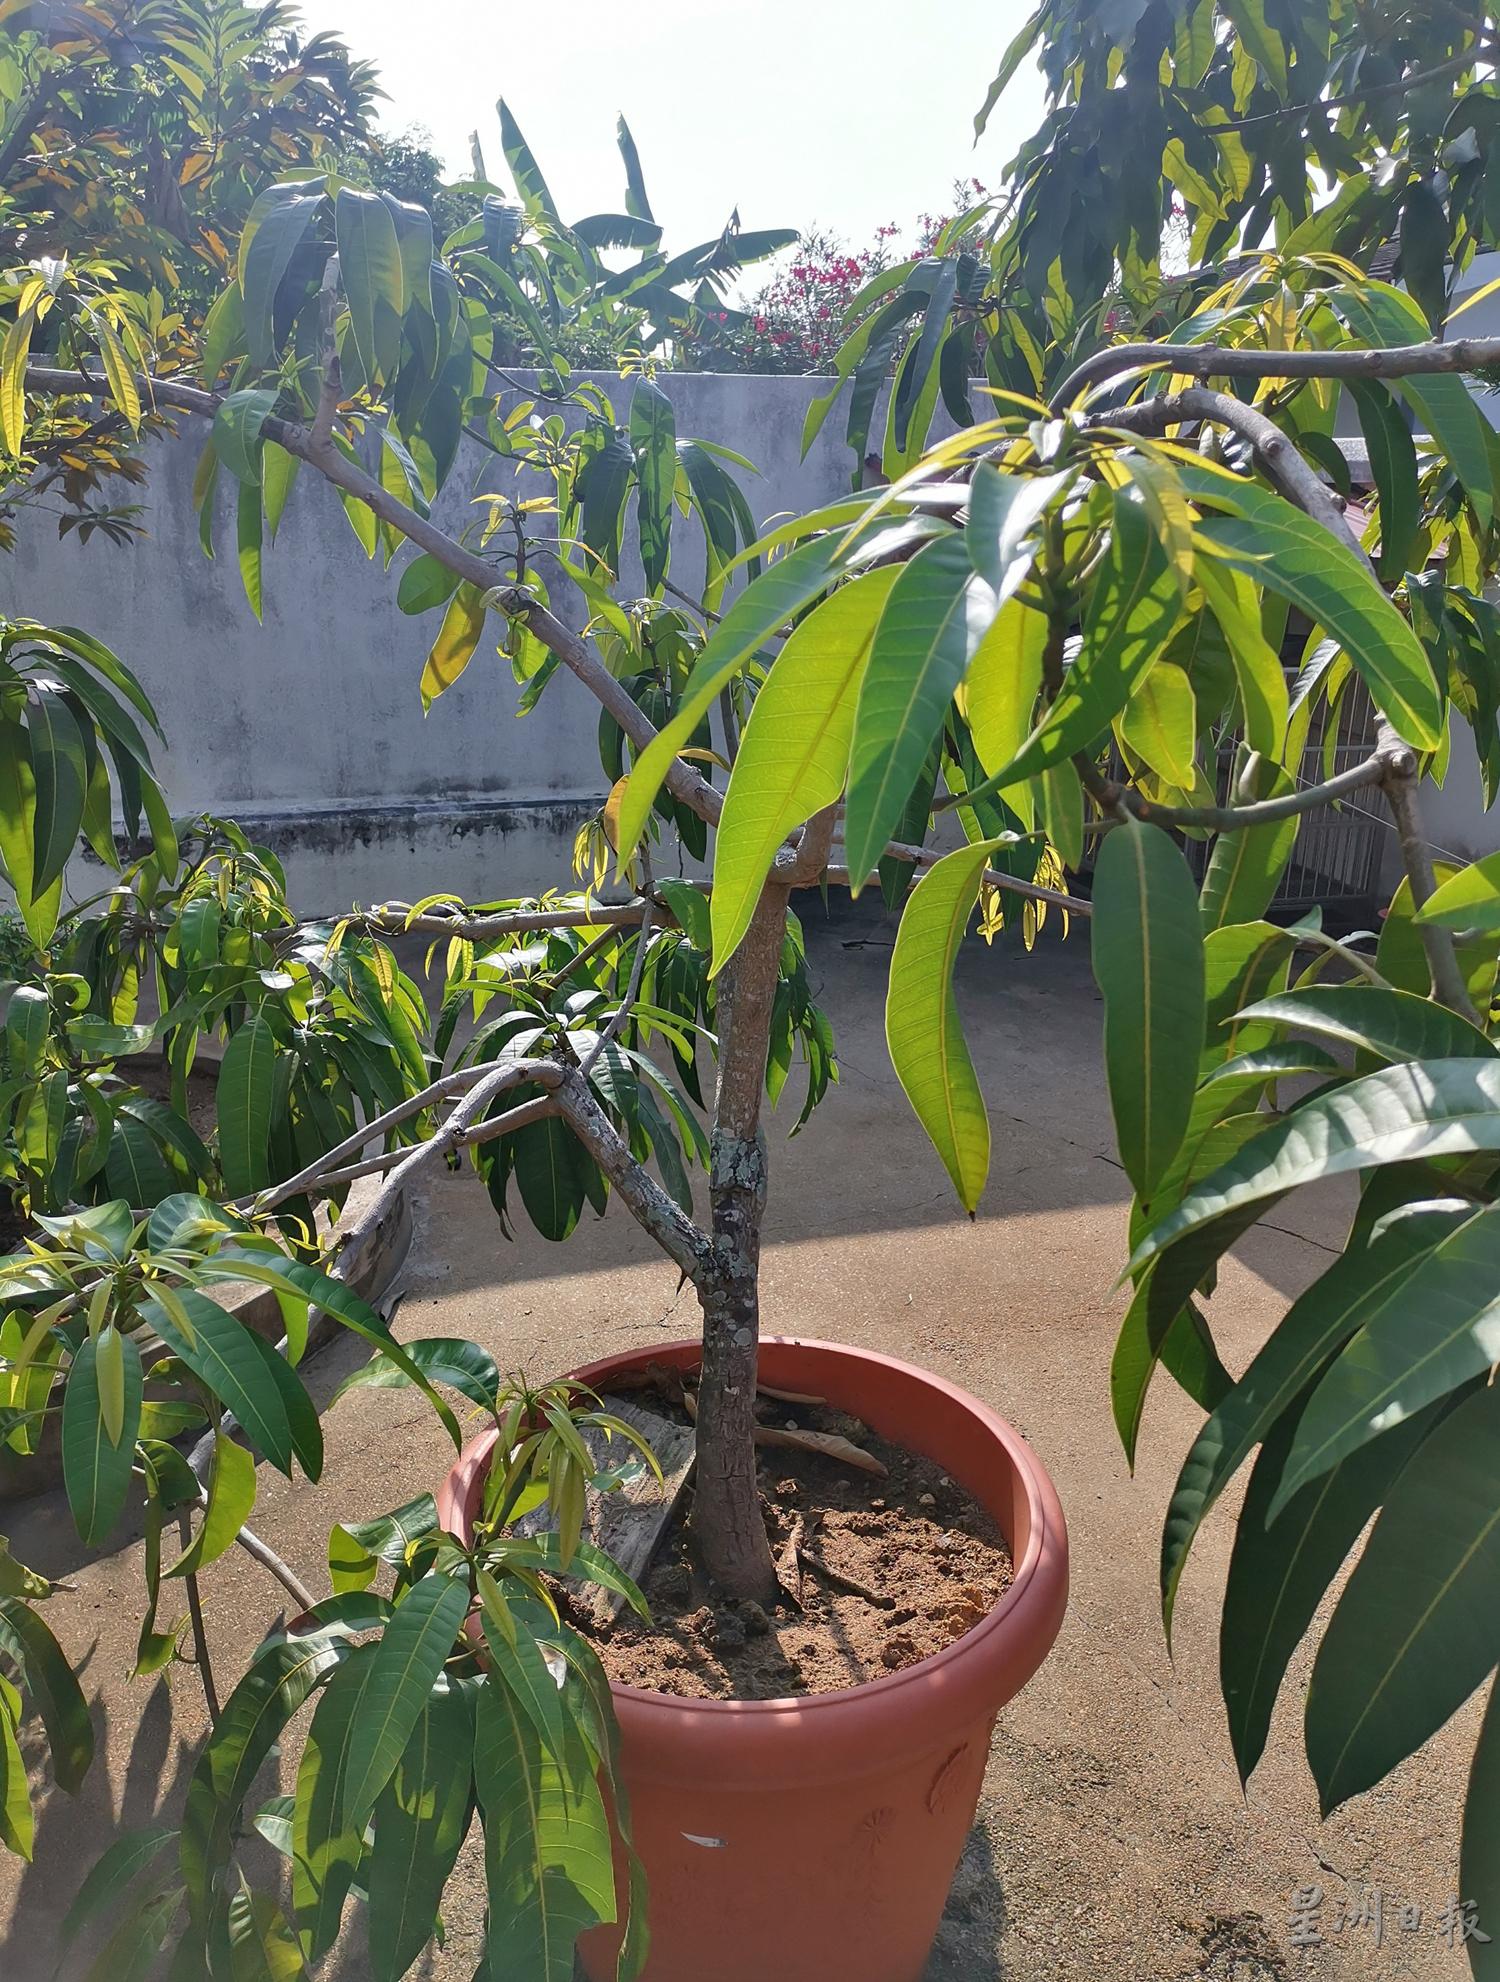 这棵芒果树，树身虽小，但已多次结果。

